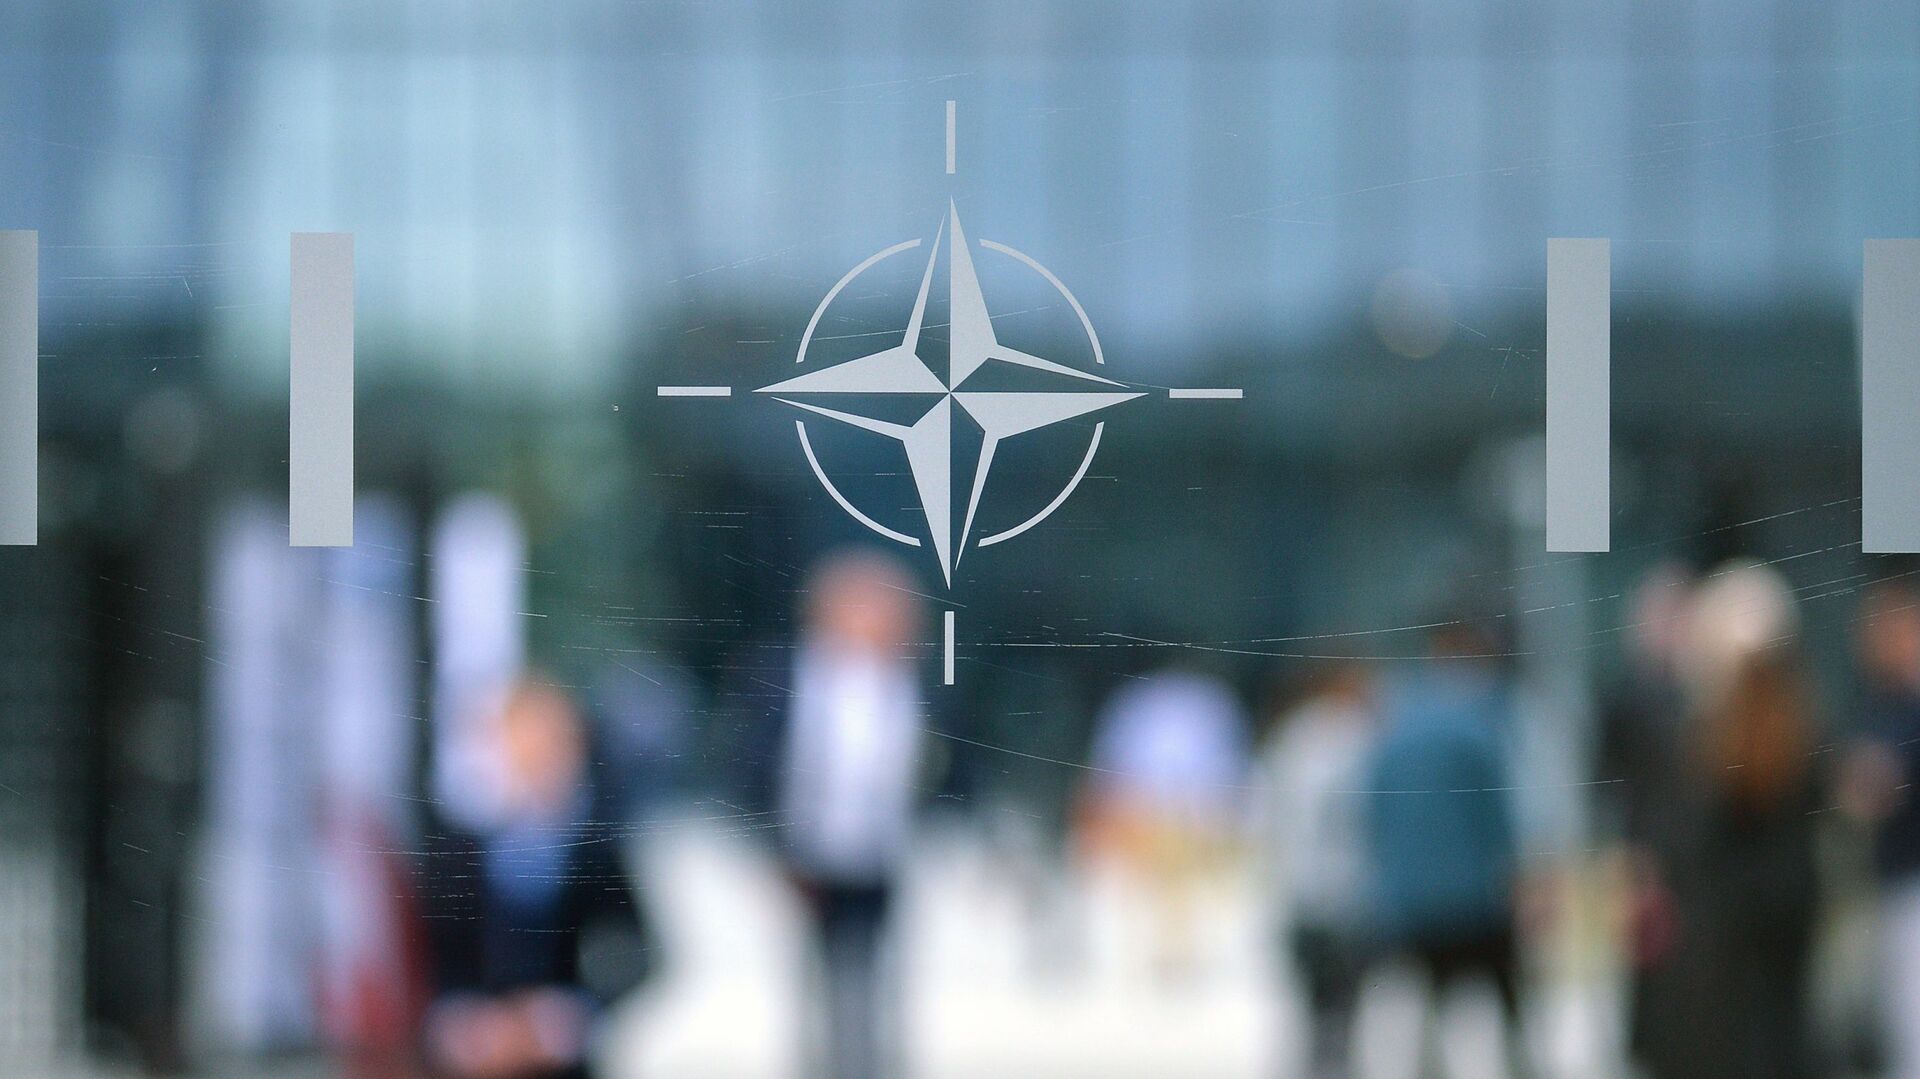 Эмблема Организации Североатлантического договора (НАТО) в Брюсселе.   - Sputnik Абхазия, 1920, 13.12.2021